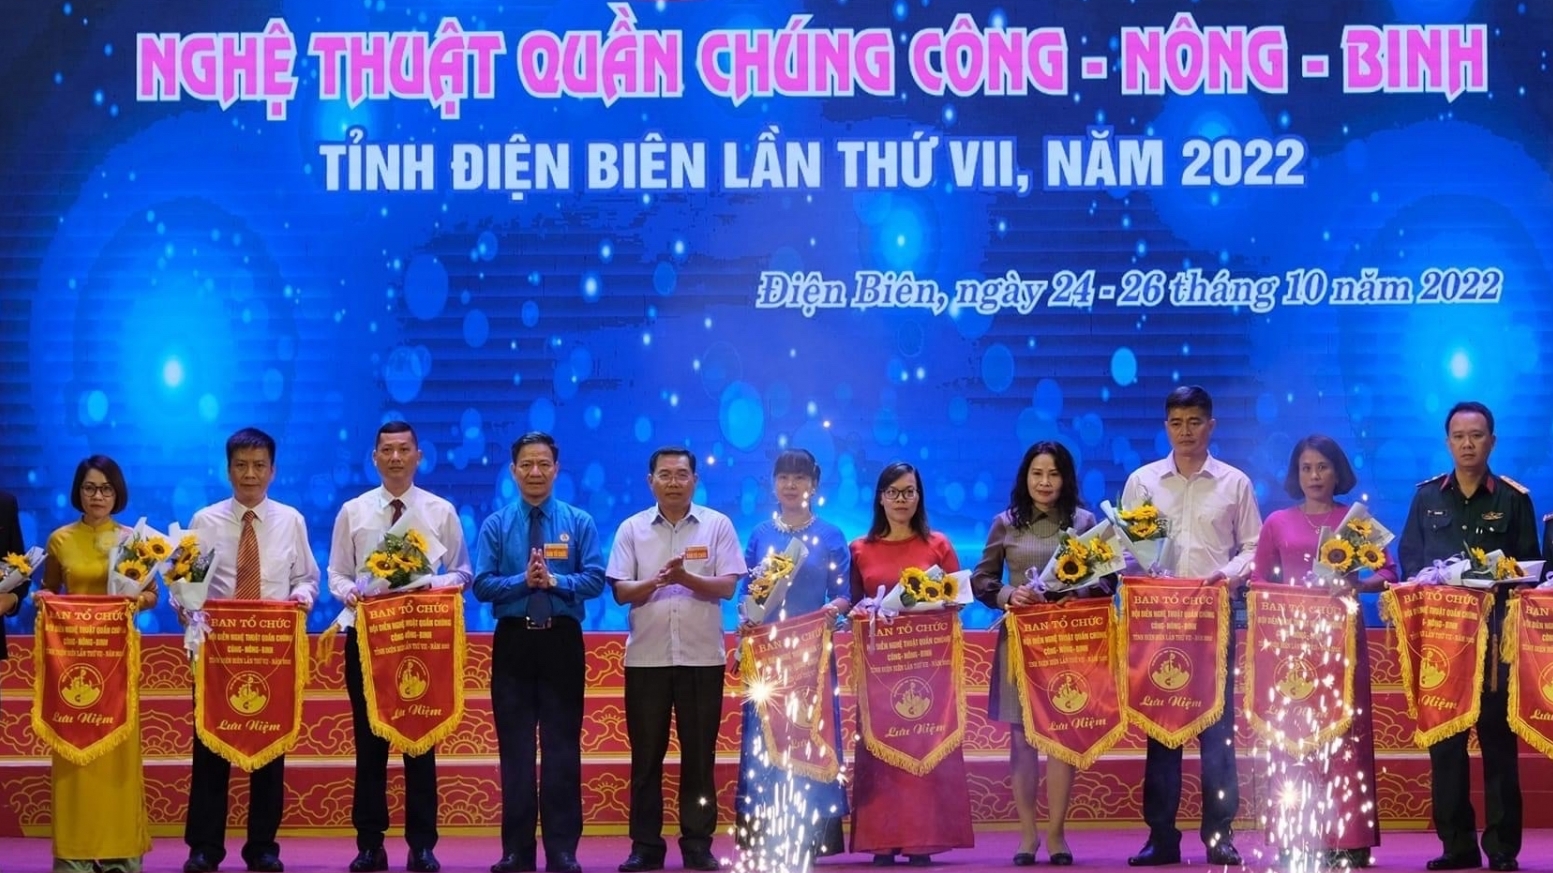 Khai mạc Hội diễn Nghệ thuật quần chúng Công - Nông - Binh tỉnh Điện Biên lần thứ VII